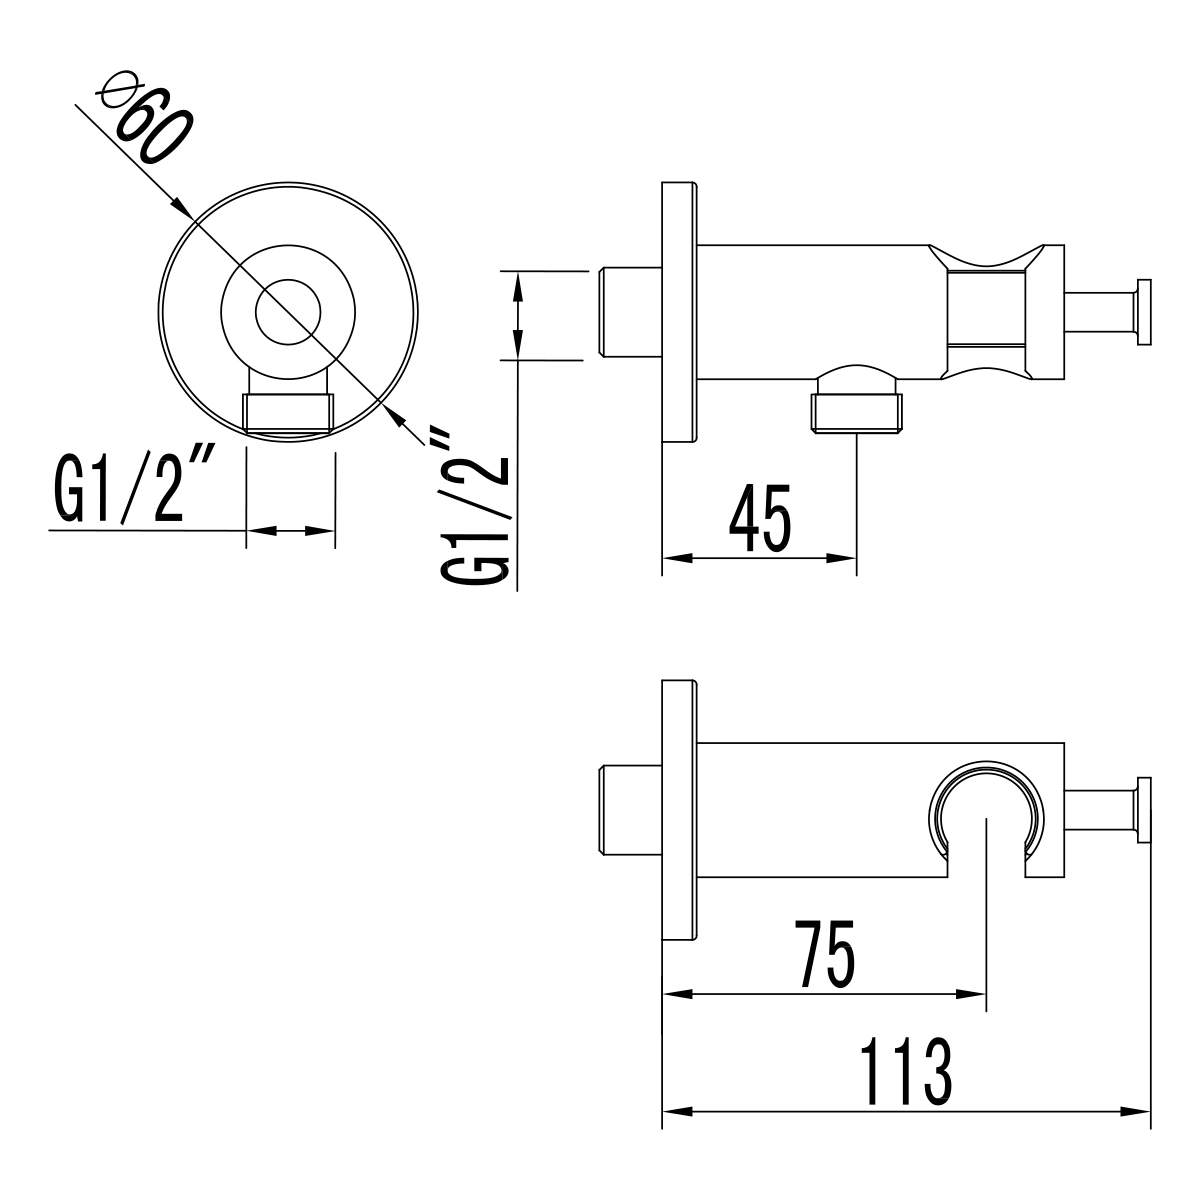 LM1185C Integrated shower holder/hose connector